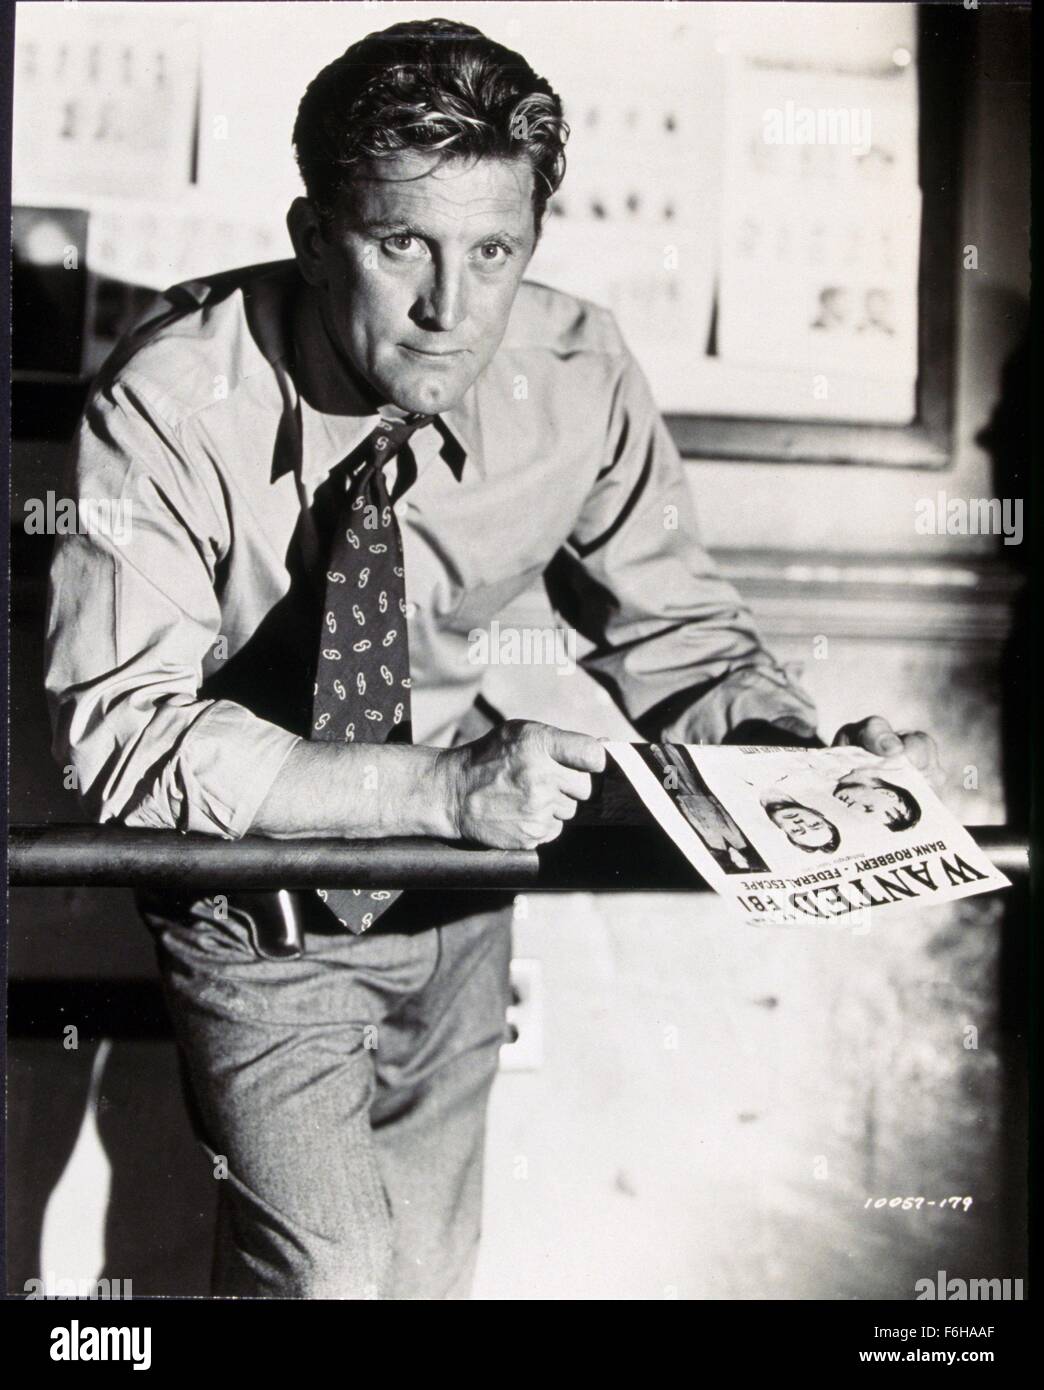 1951, le titre du film : detective story, Réalisateur : William Wyler, Studio : Paramount, Photo : KIRK DOUGLAS, cravate, détective, voulait, Bounty, SPY, police, COP, sérieux, MISSION, se penchant, balustrade. (Crédit Image : SNAP) Banque D'Images